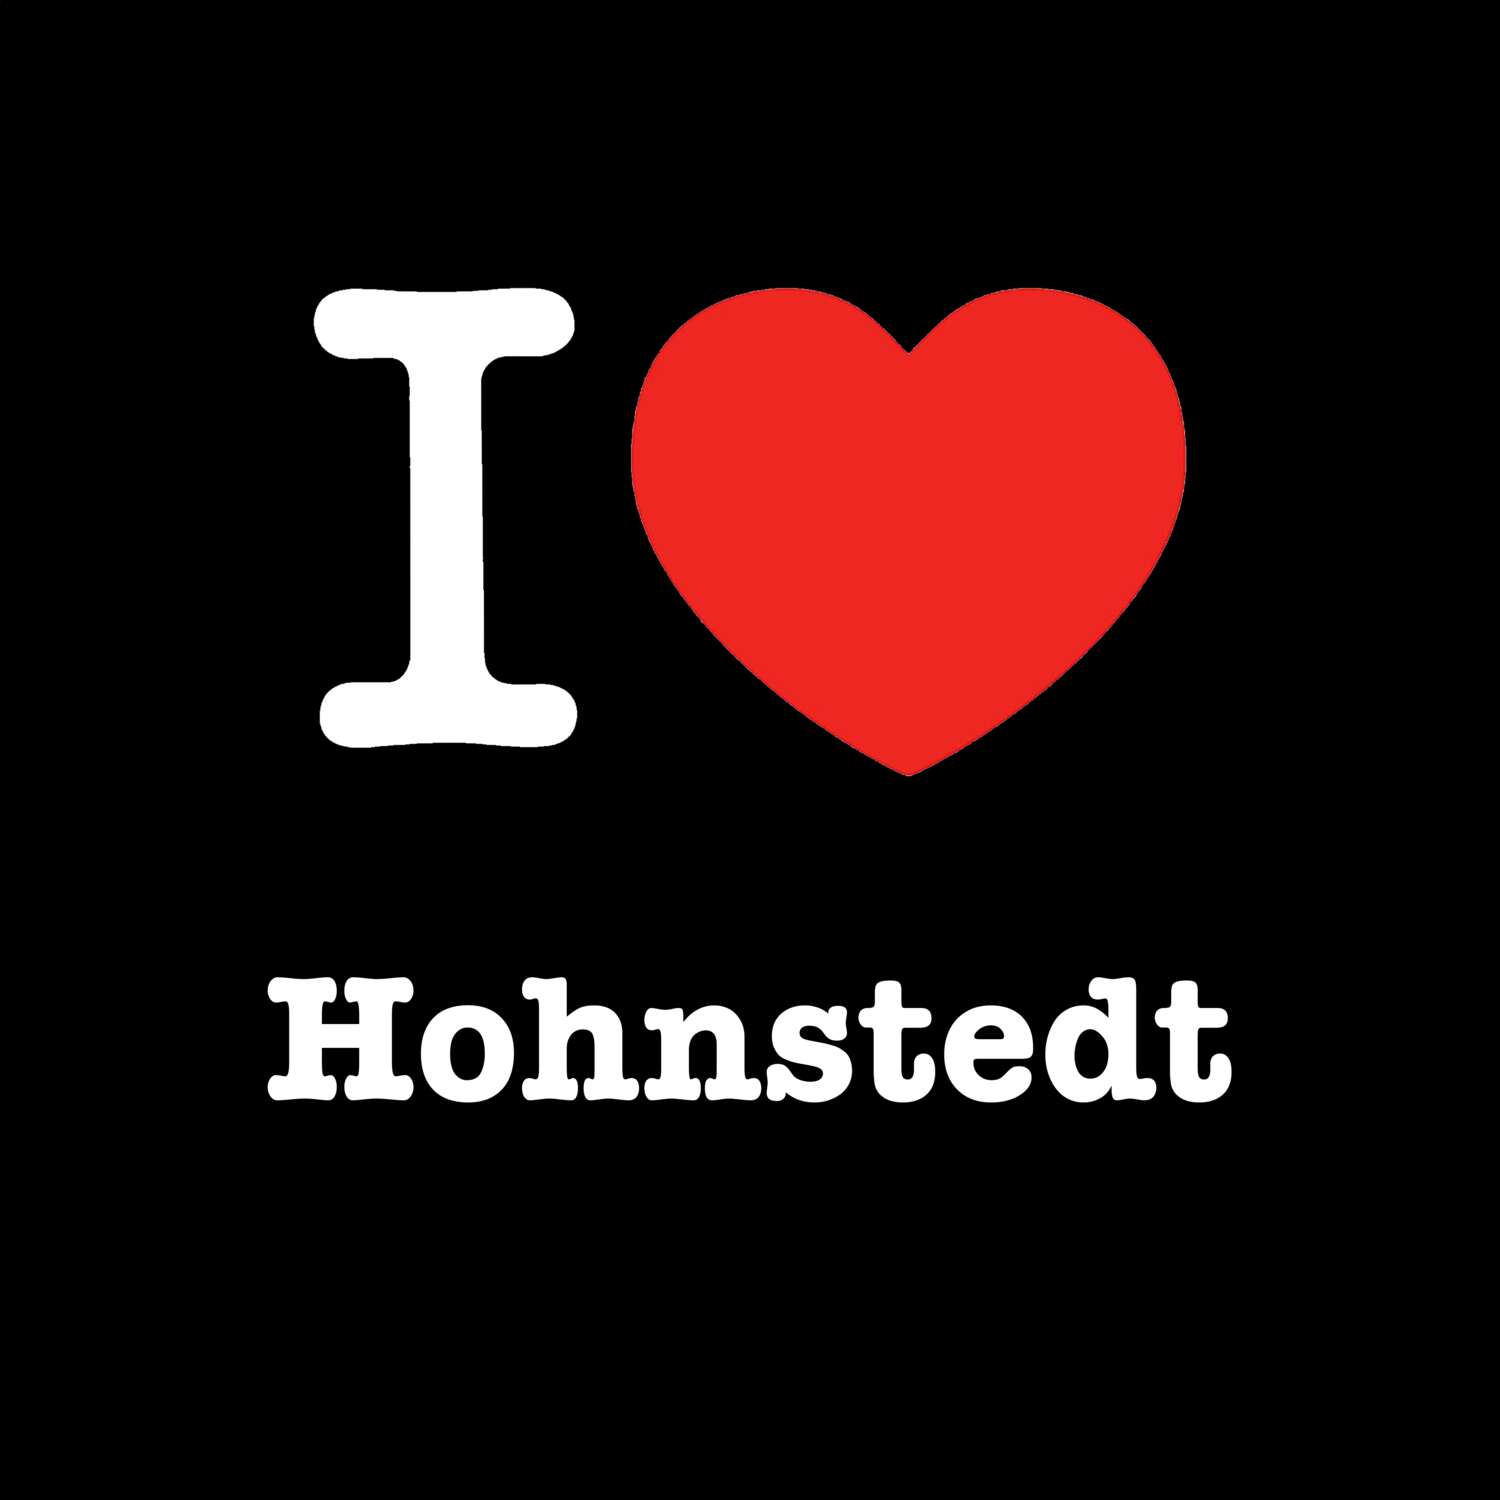 Hohnstedt T-Shirt »I love«